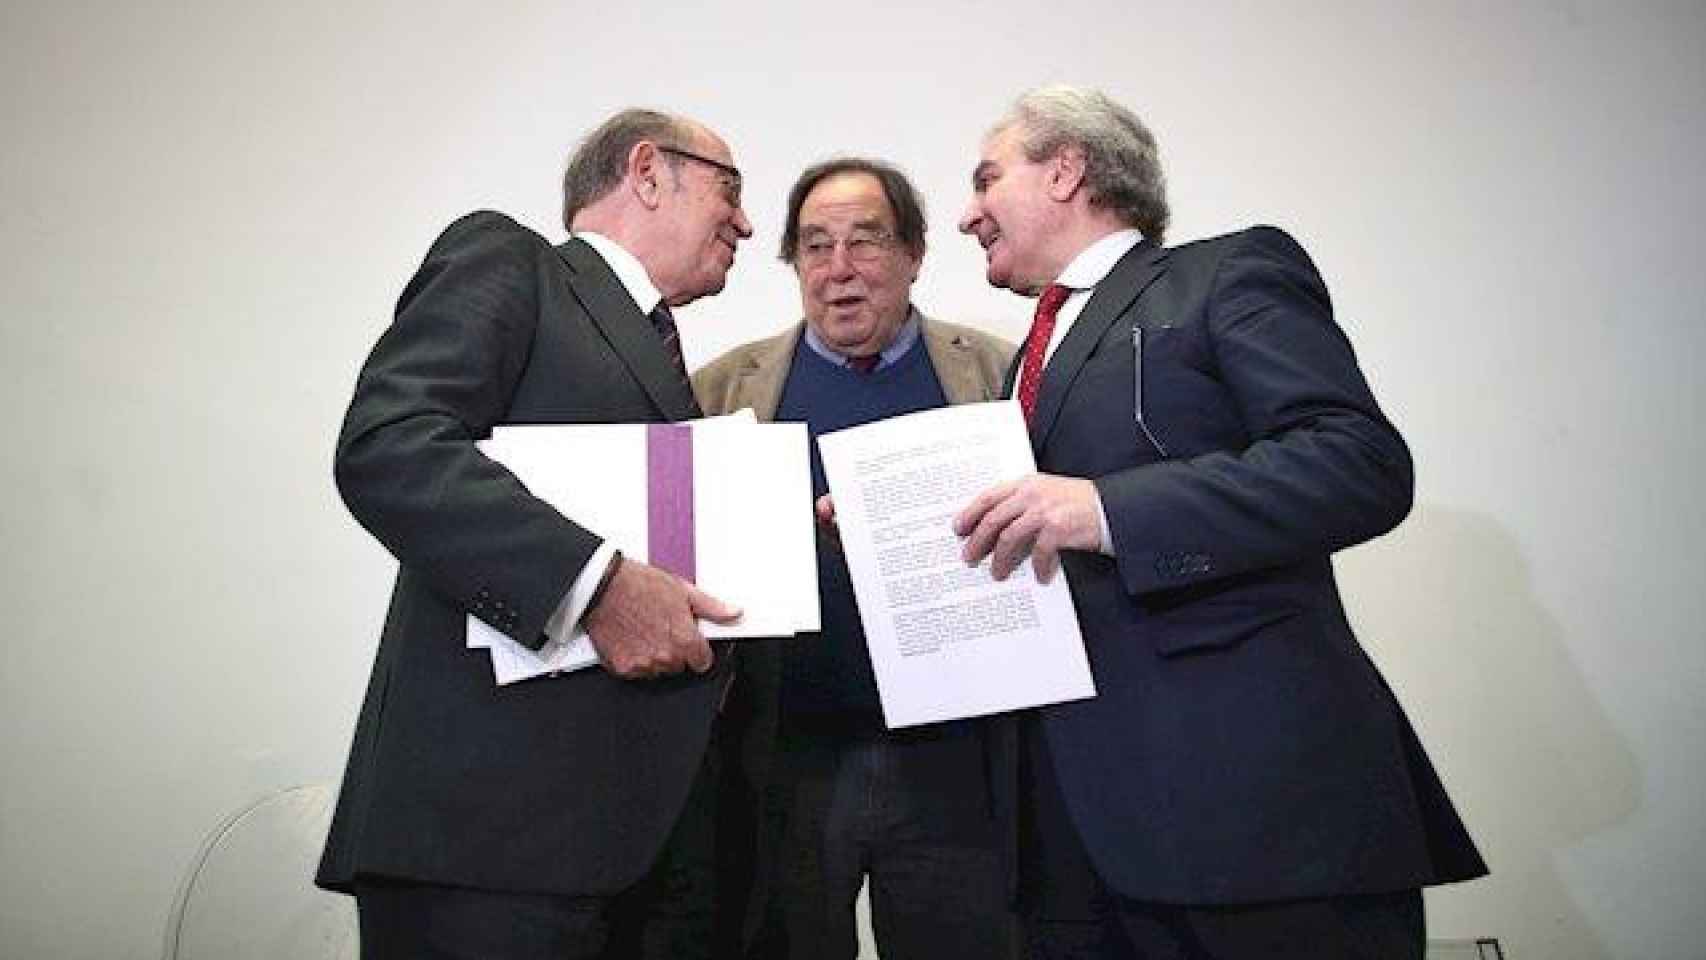 Redondo Terreros, De Carreras y César Antonio Molina en la presentación del manifiesto 'El País que reúne' a favor de un pacto PSOE-PP  / EP